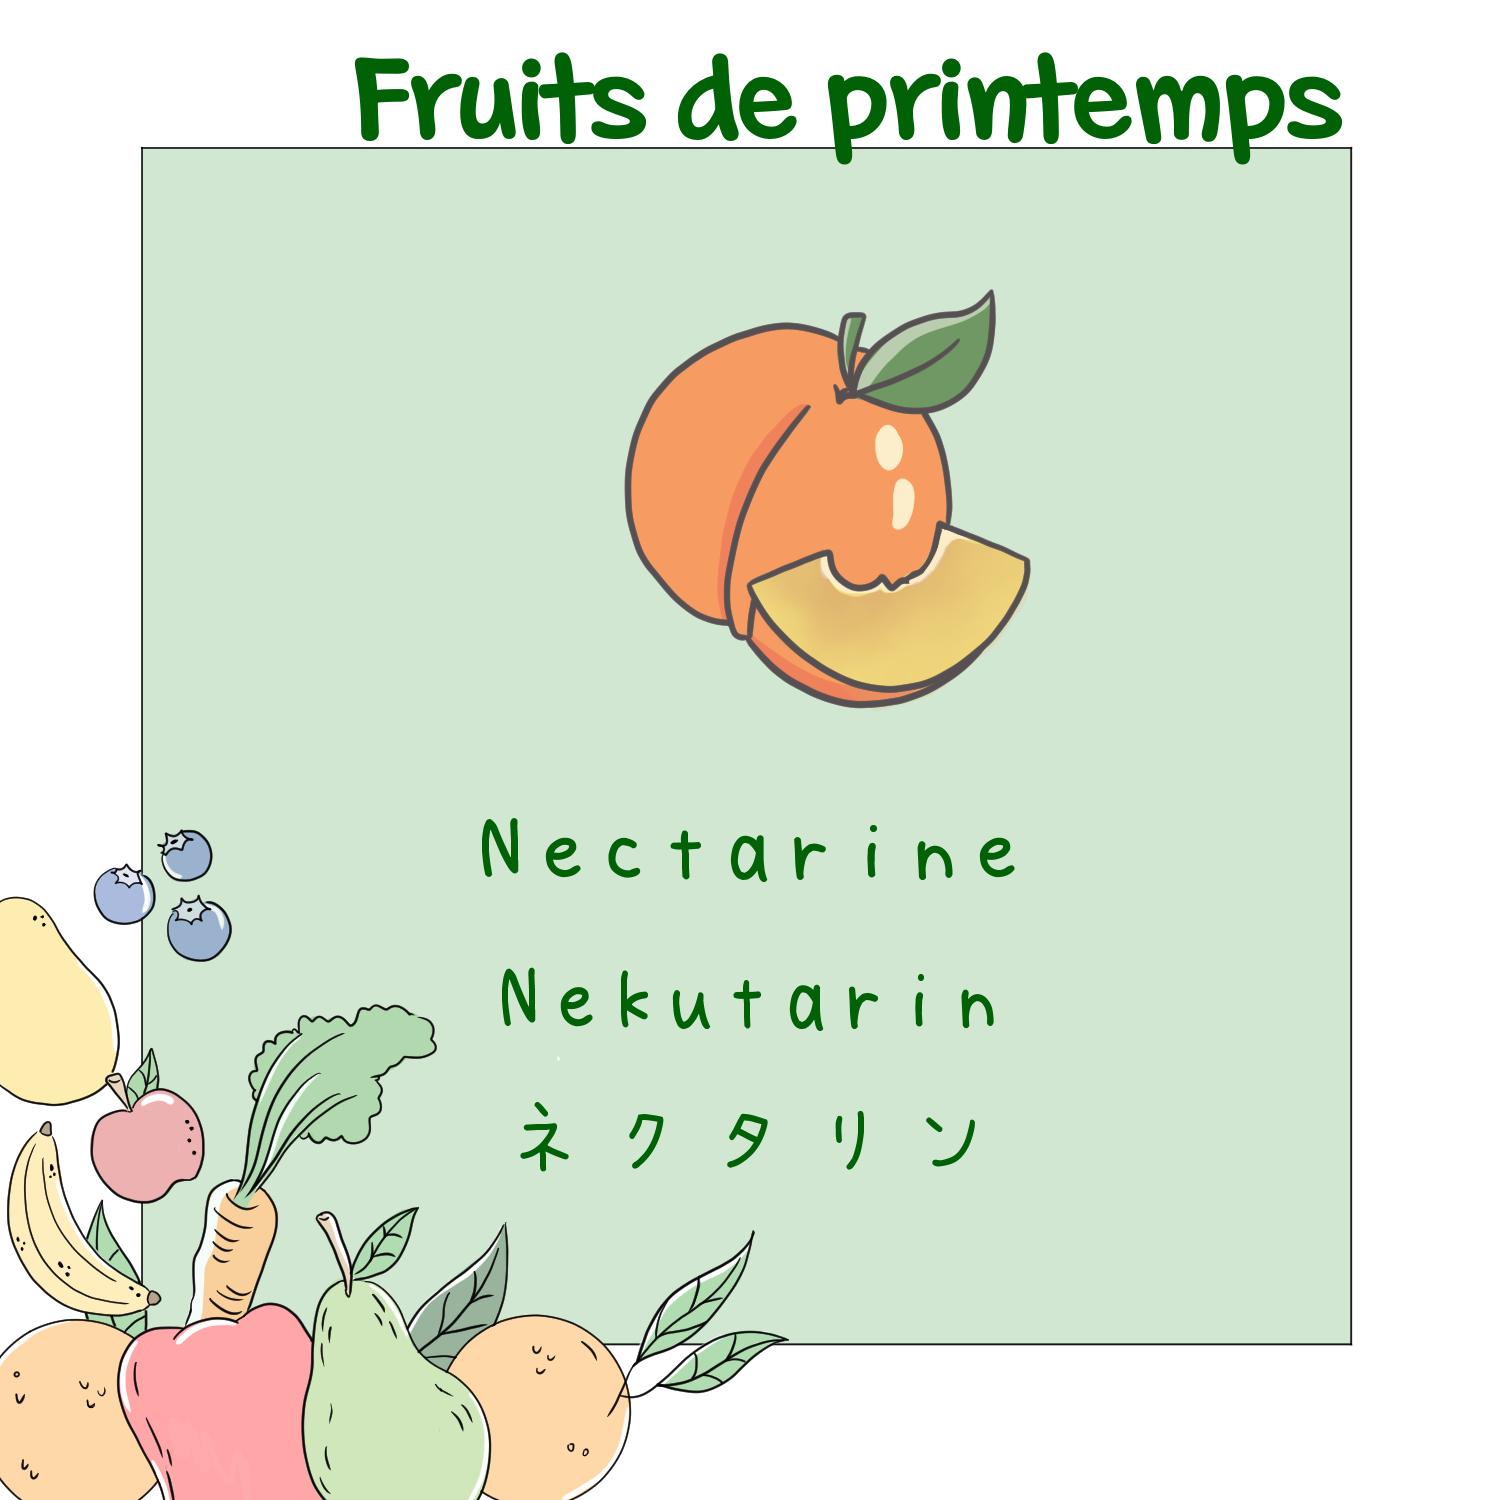 7) Nectarine